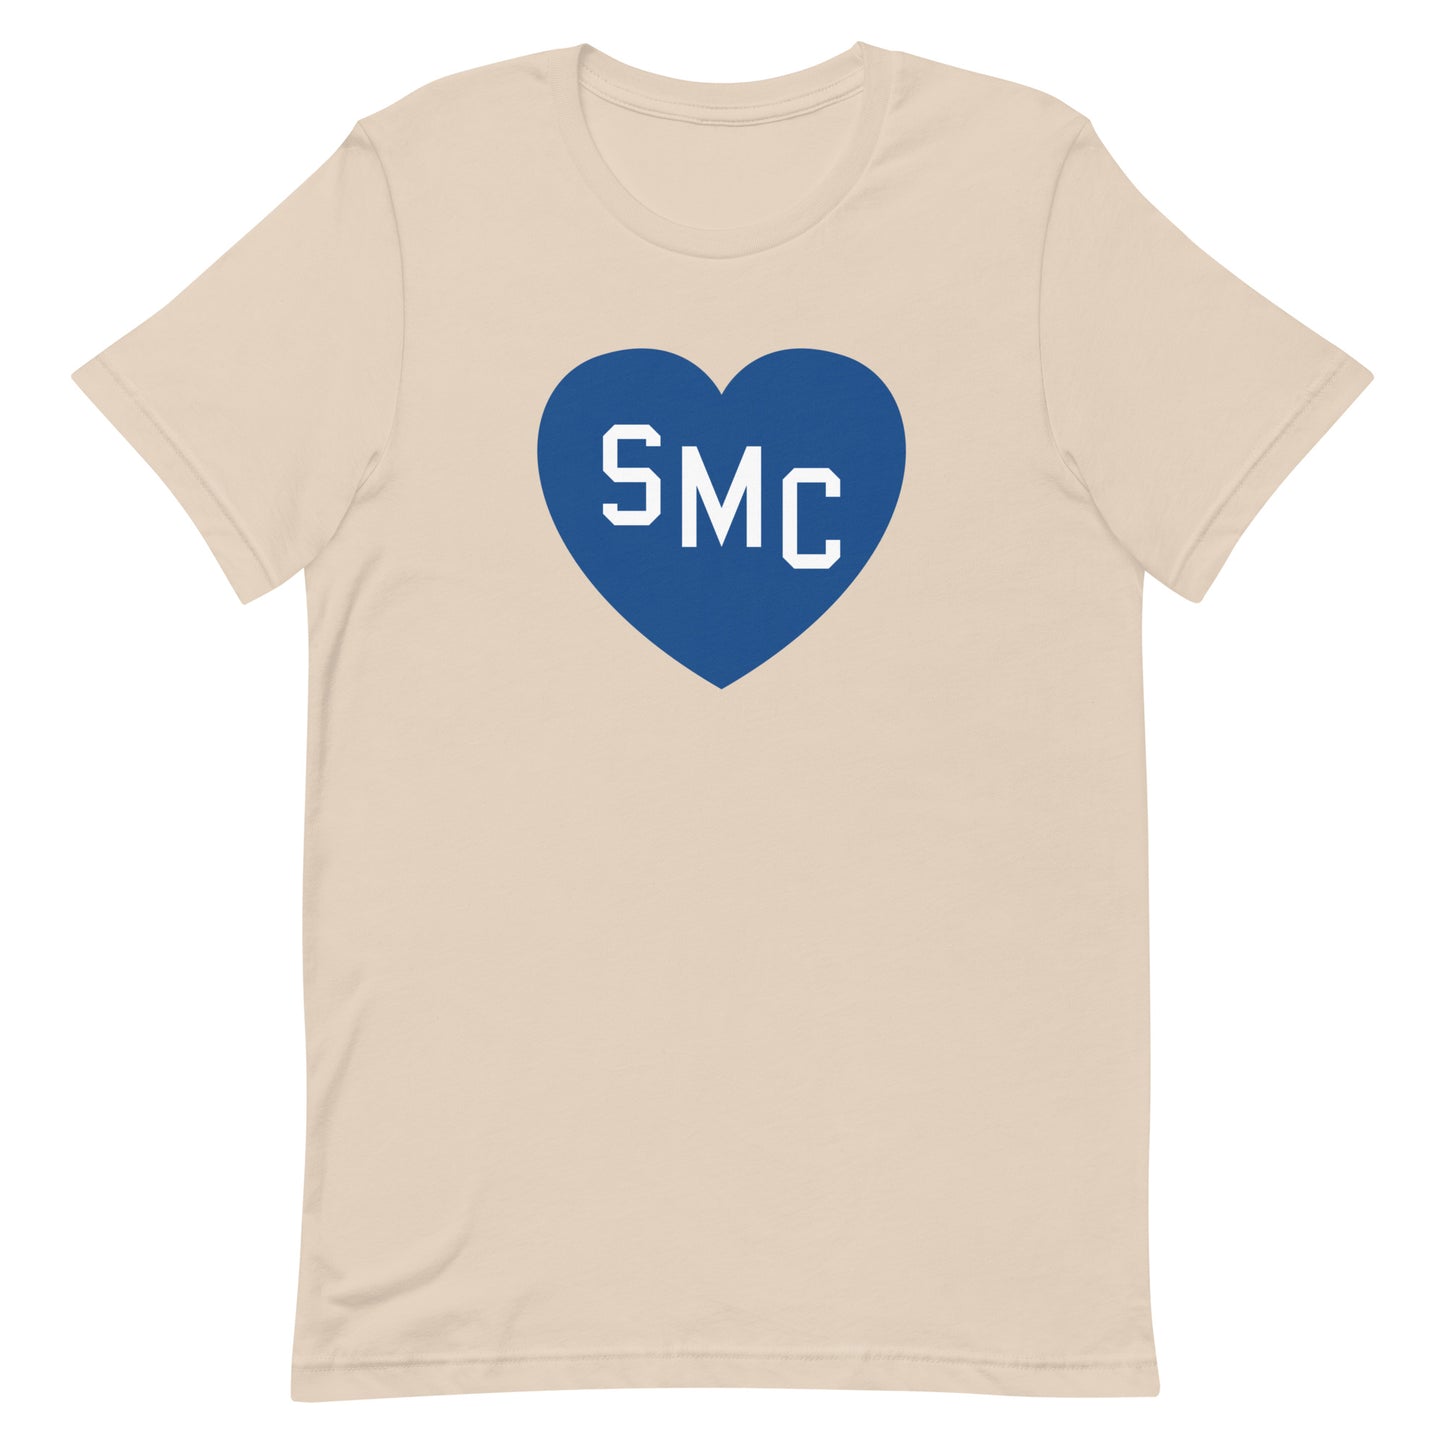 SMC Heart Tee